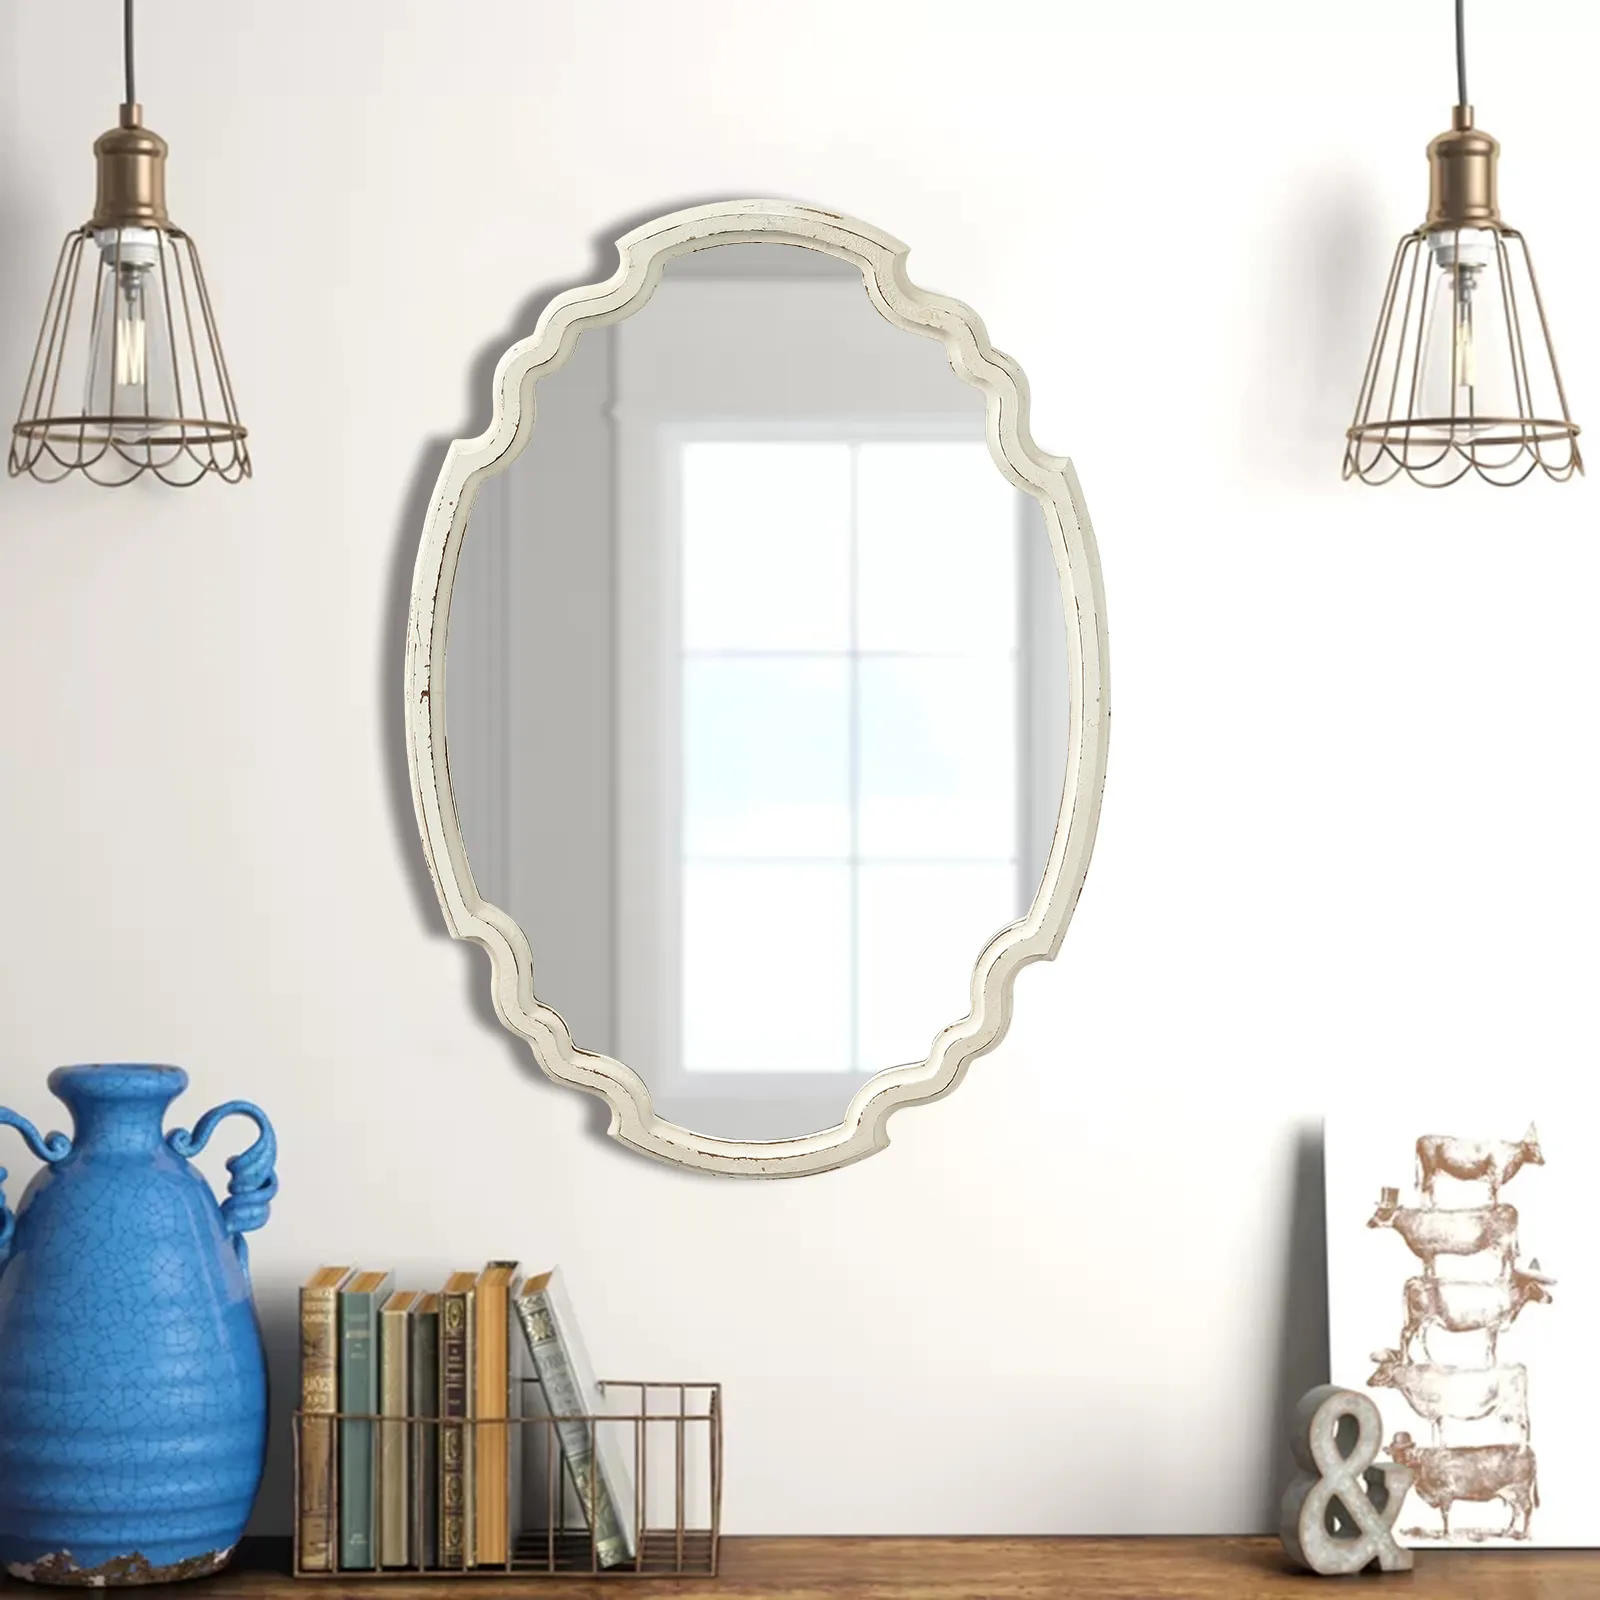 مرآة خشبية بيضاوية ريفية ، مرآة حائط معلقة ، مرآة حائط تقليدية لتزيين المنزل